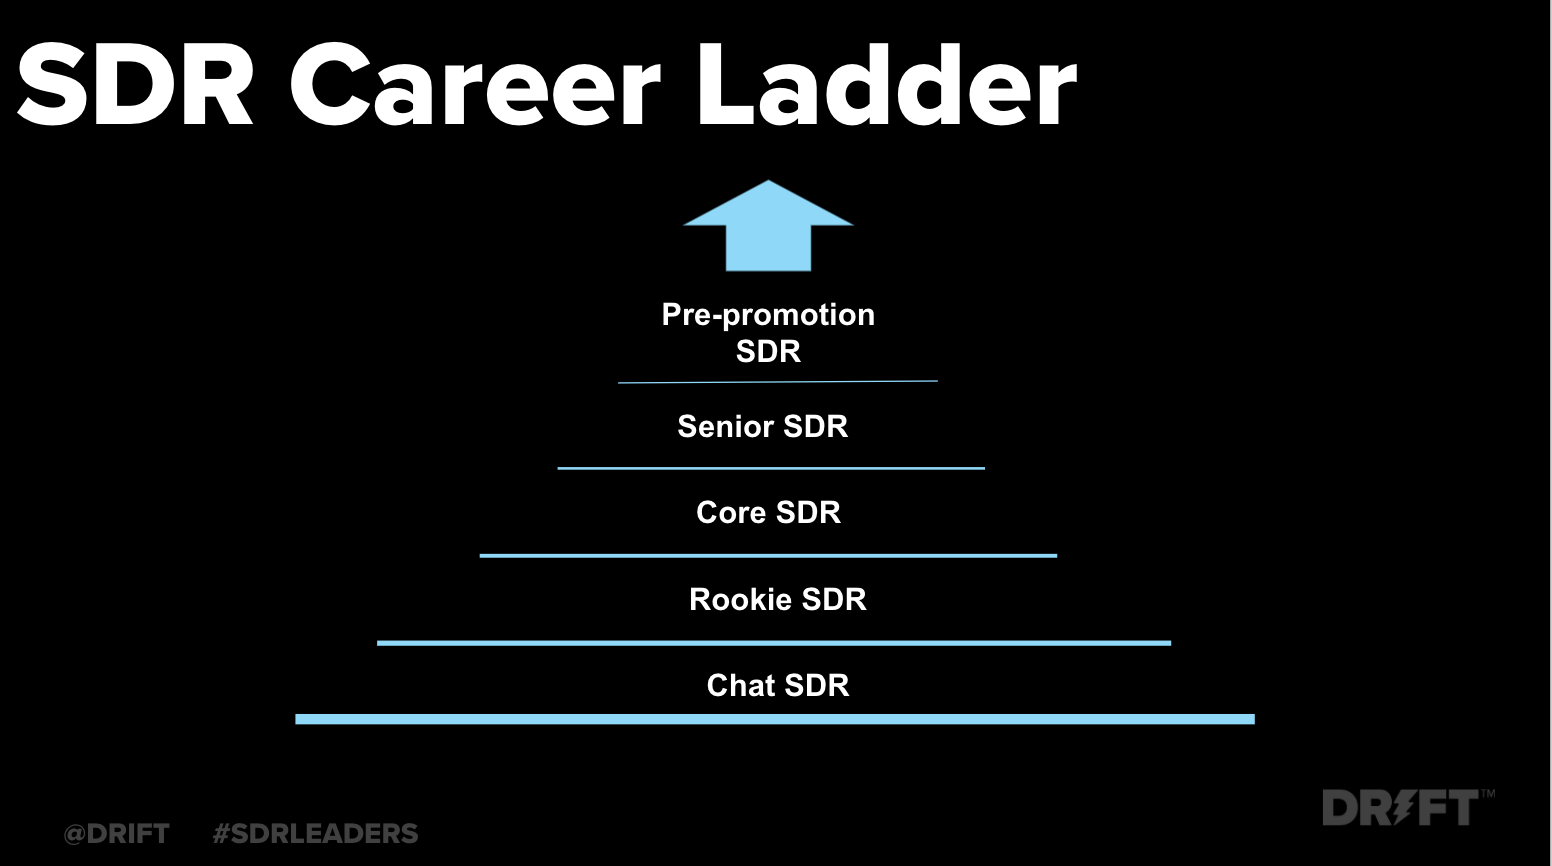 SDR Career Ladder